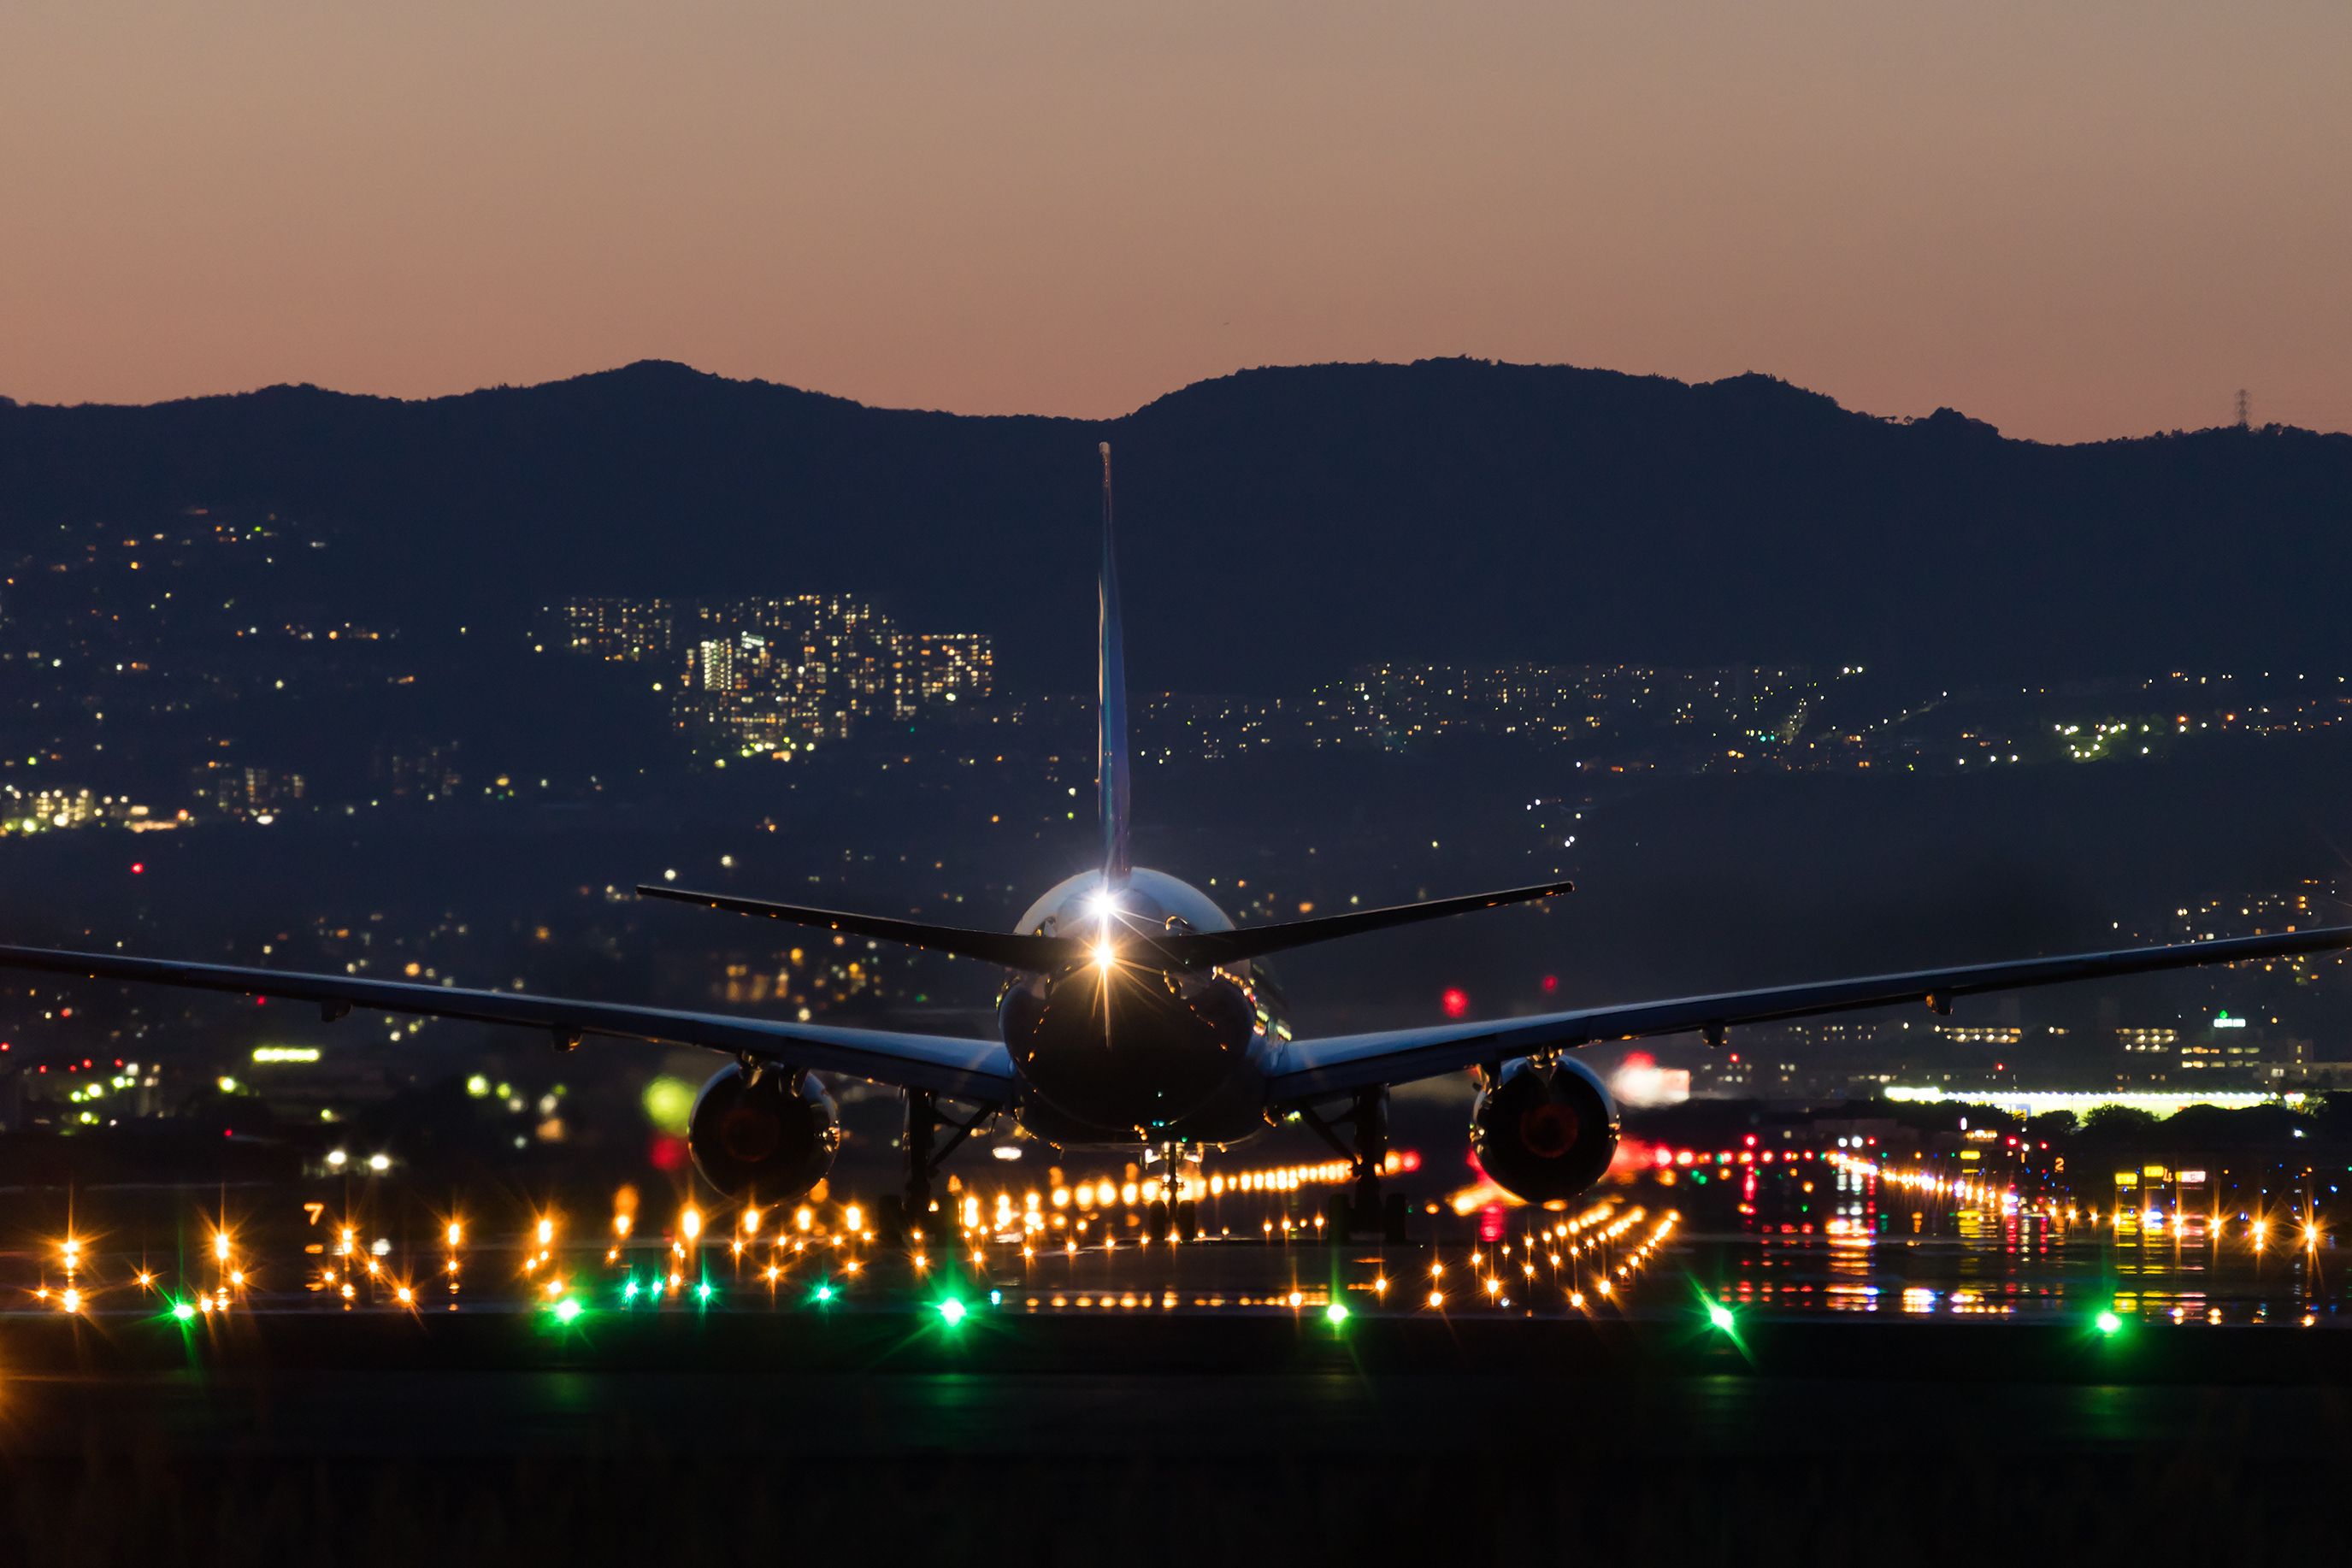 aircraft landing at night